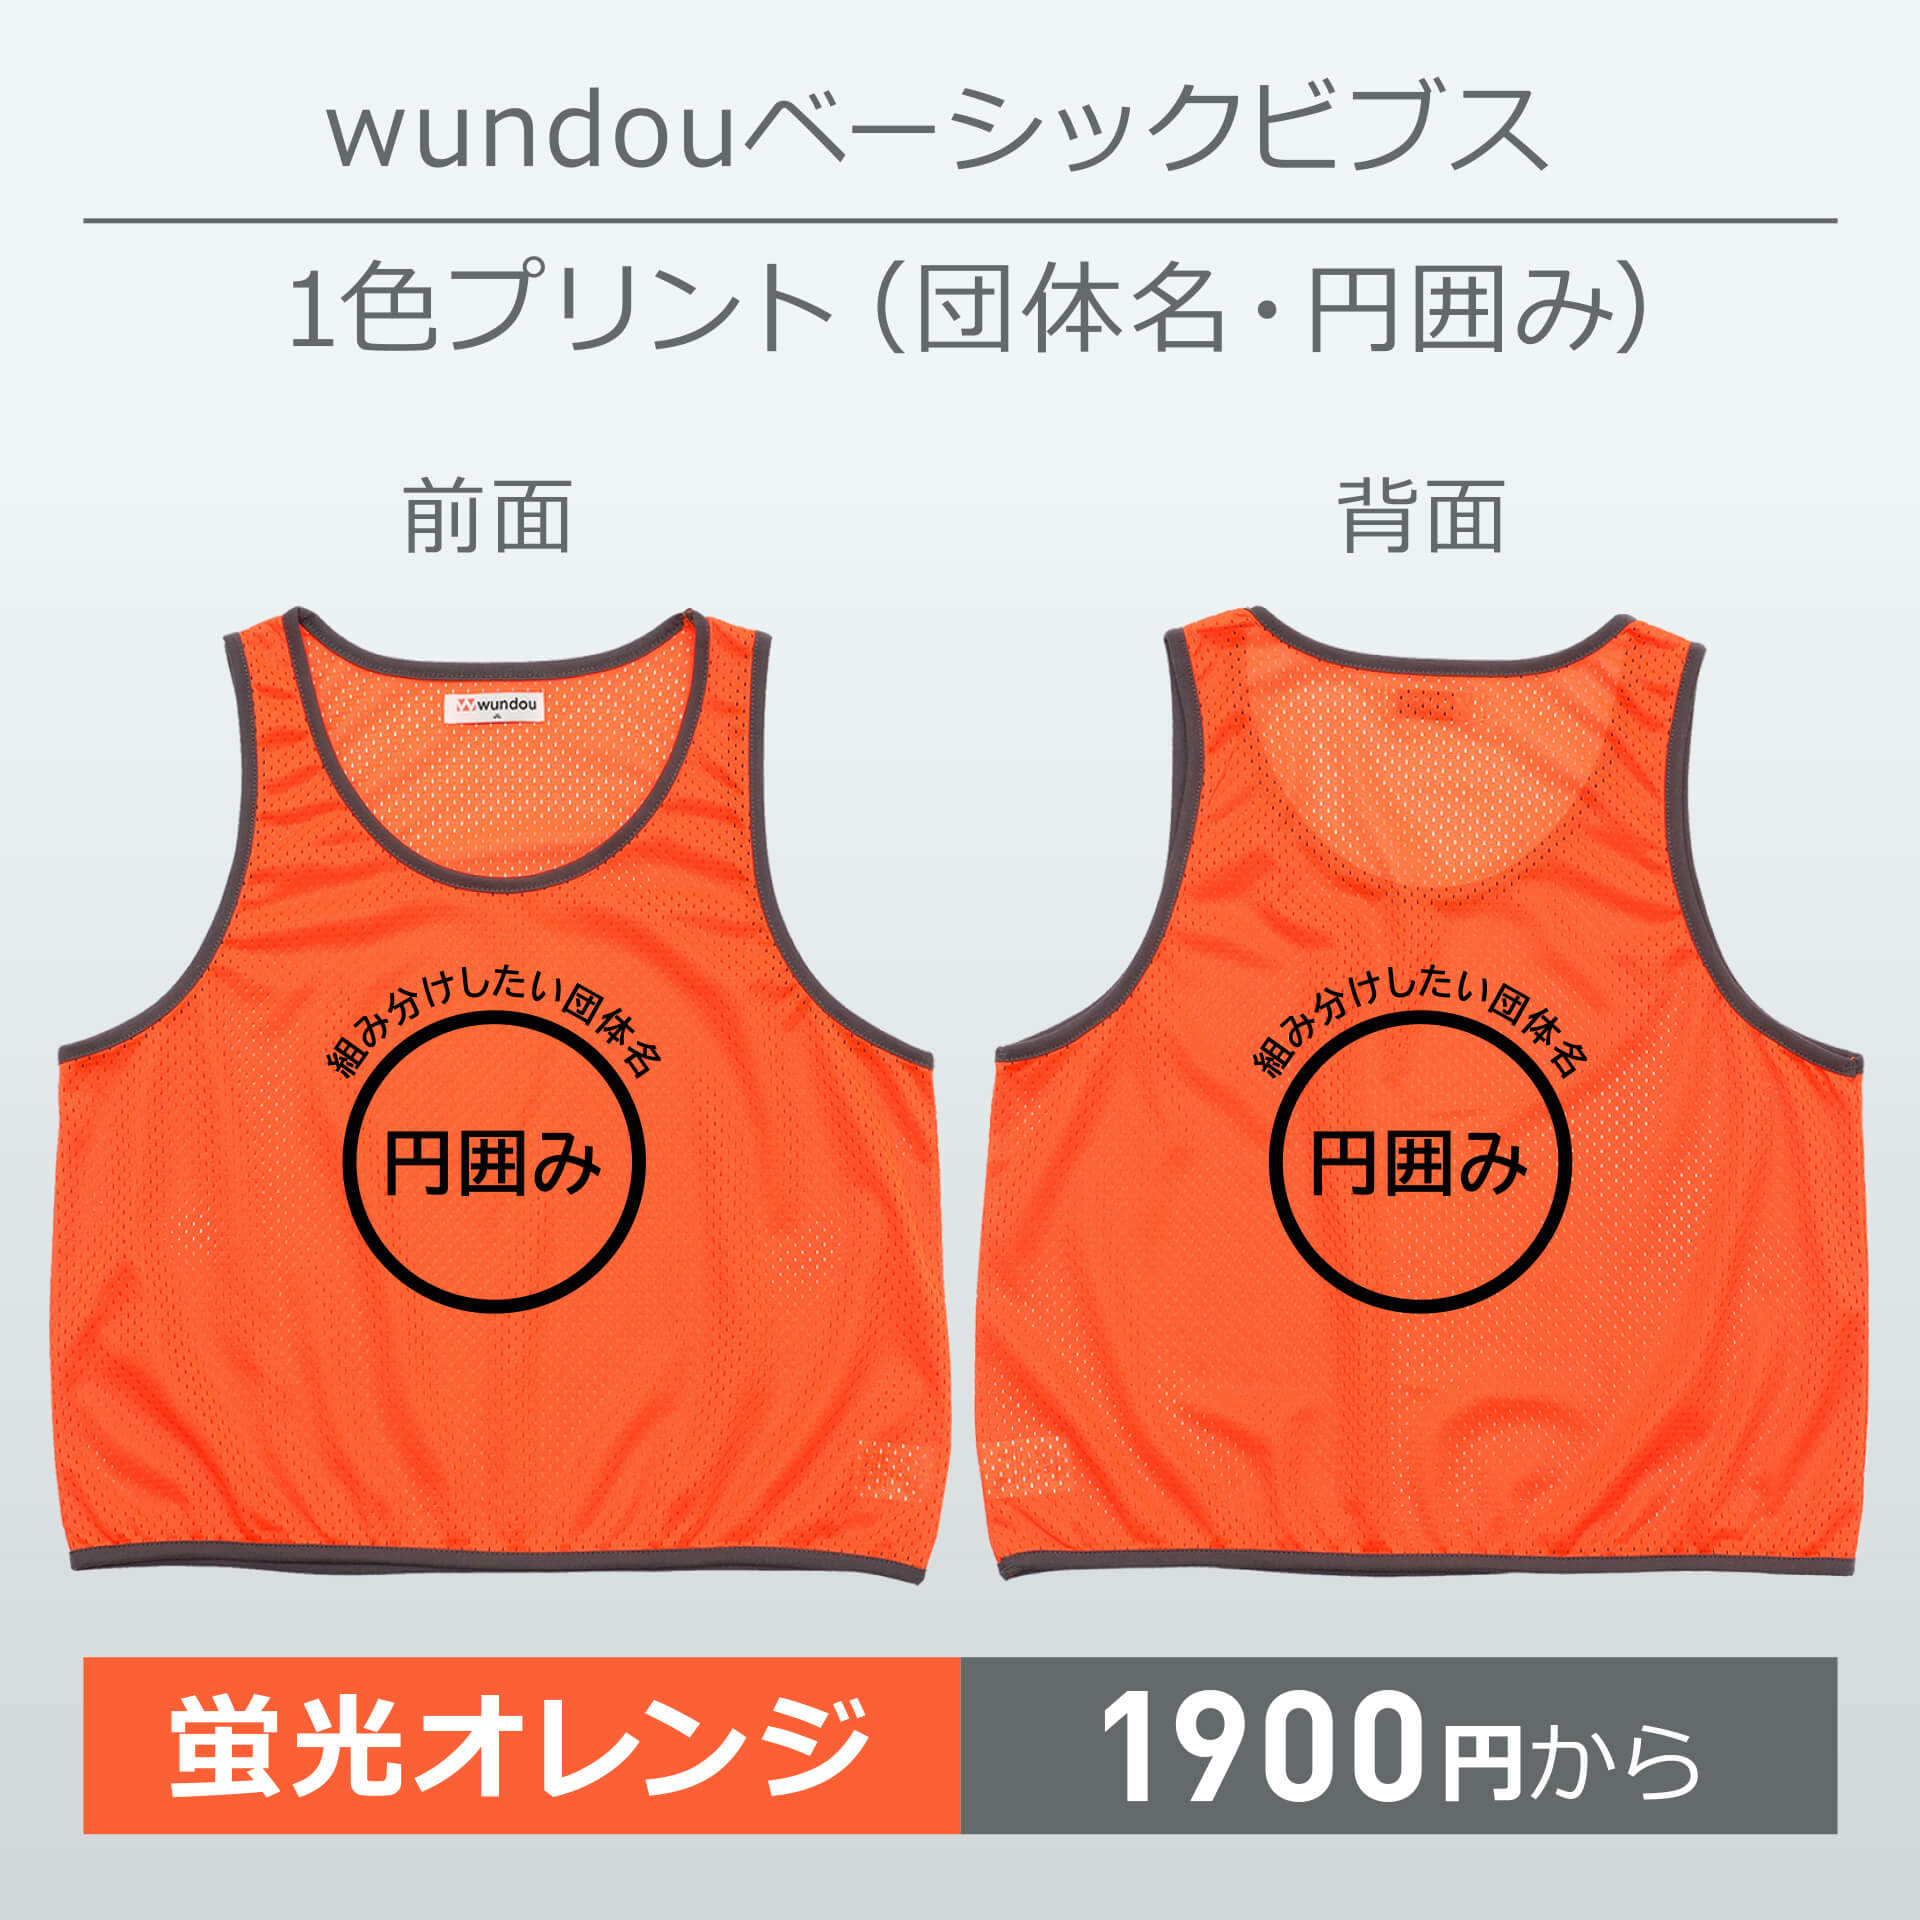 wundou・ベーシックビブス・1色プリント(団体名・円囲み)・蛍光オレンジ